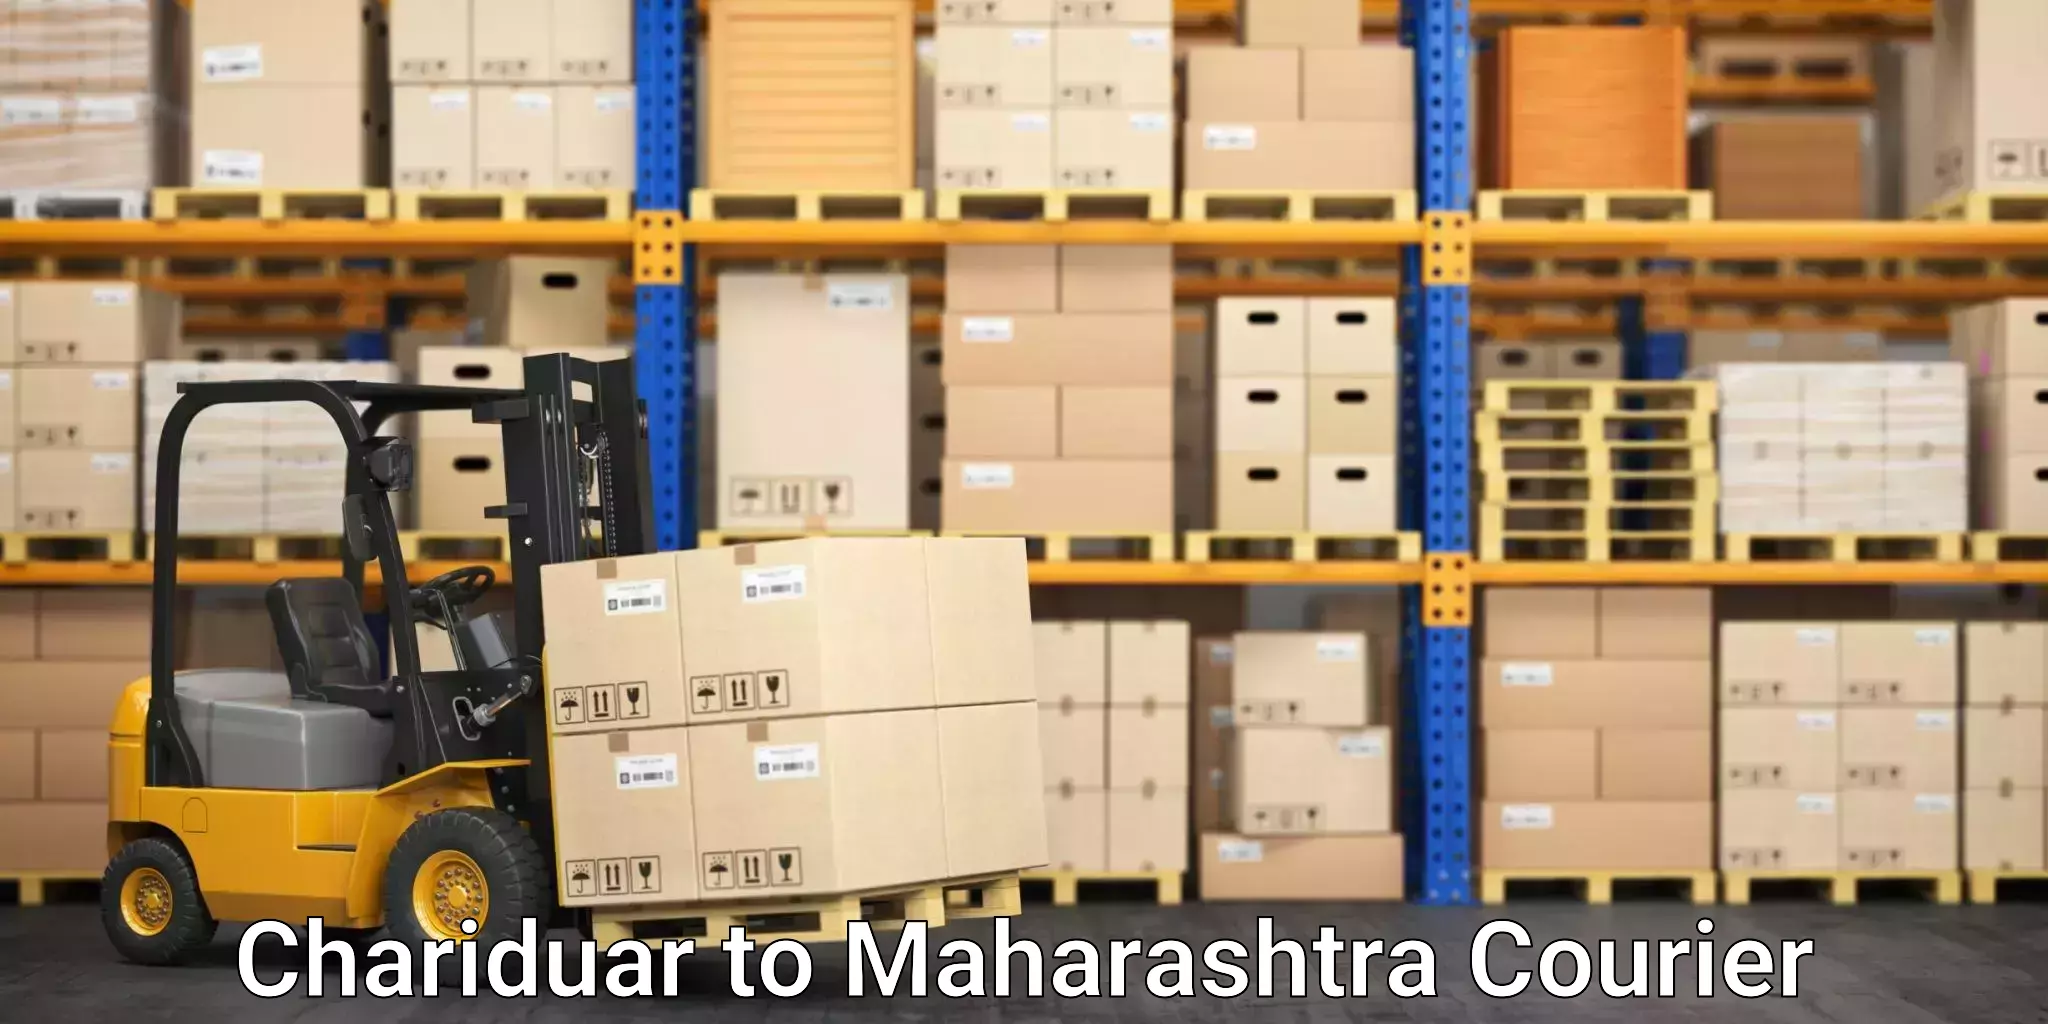 Next-day delivery options Chariduar to Maharashtra